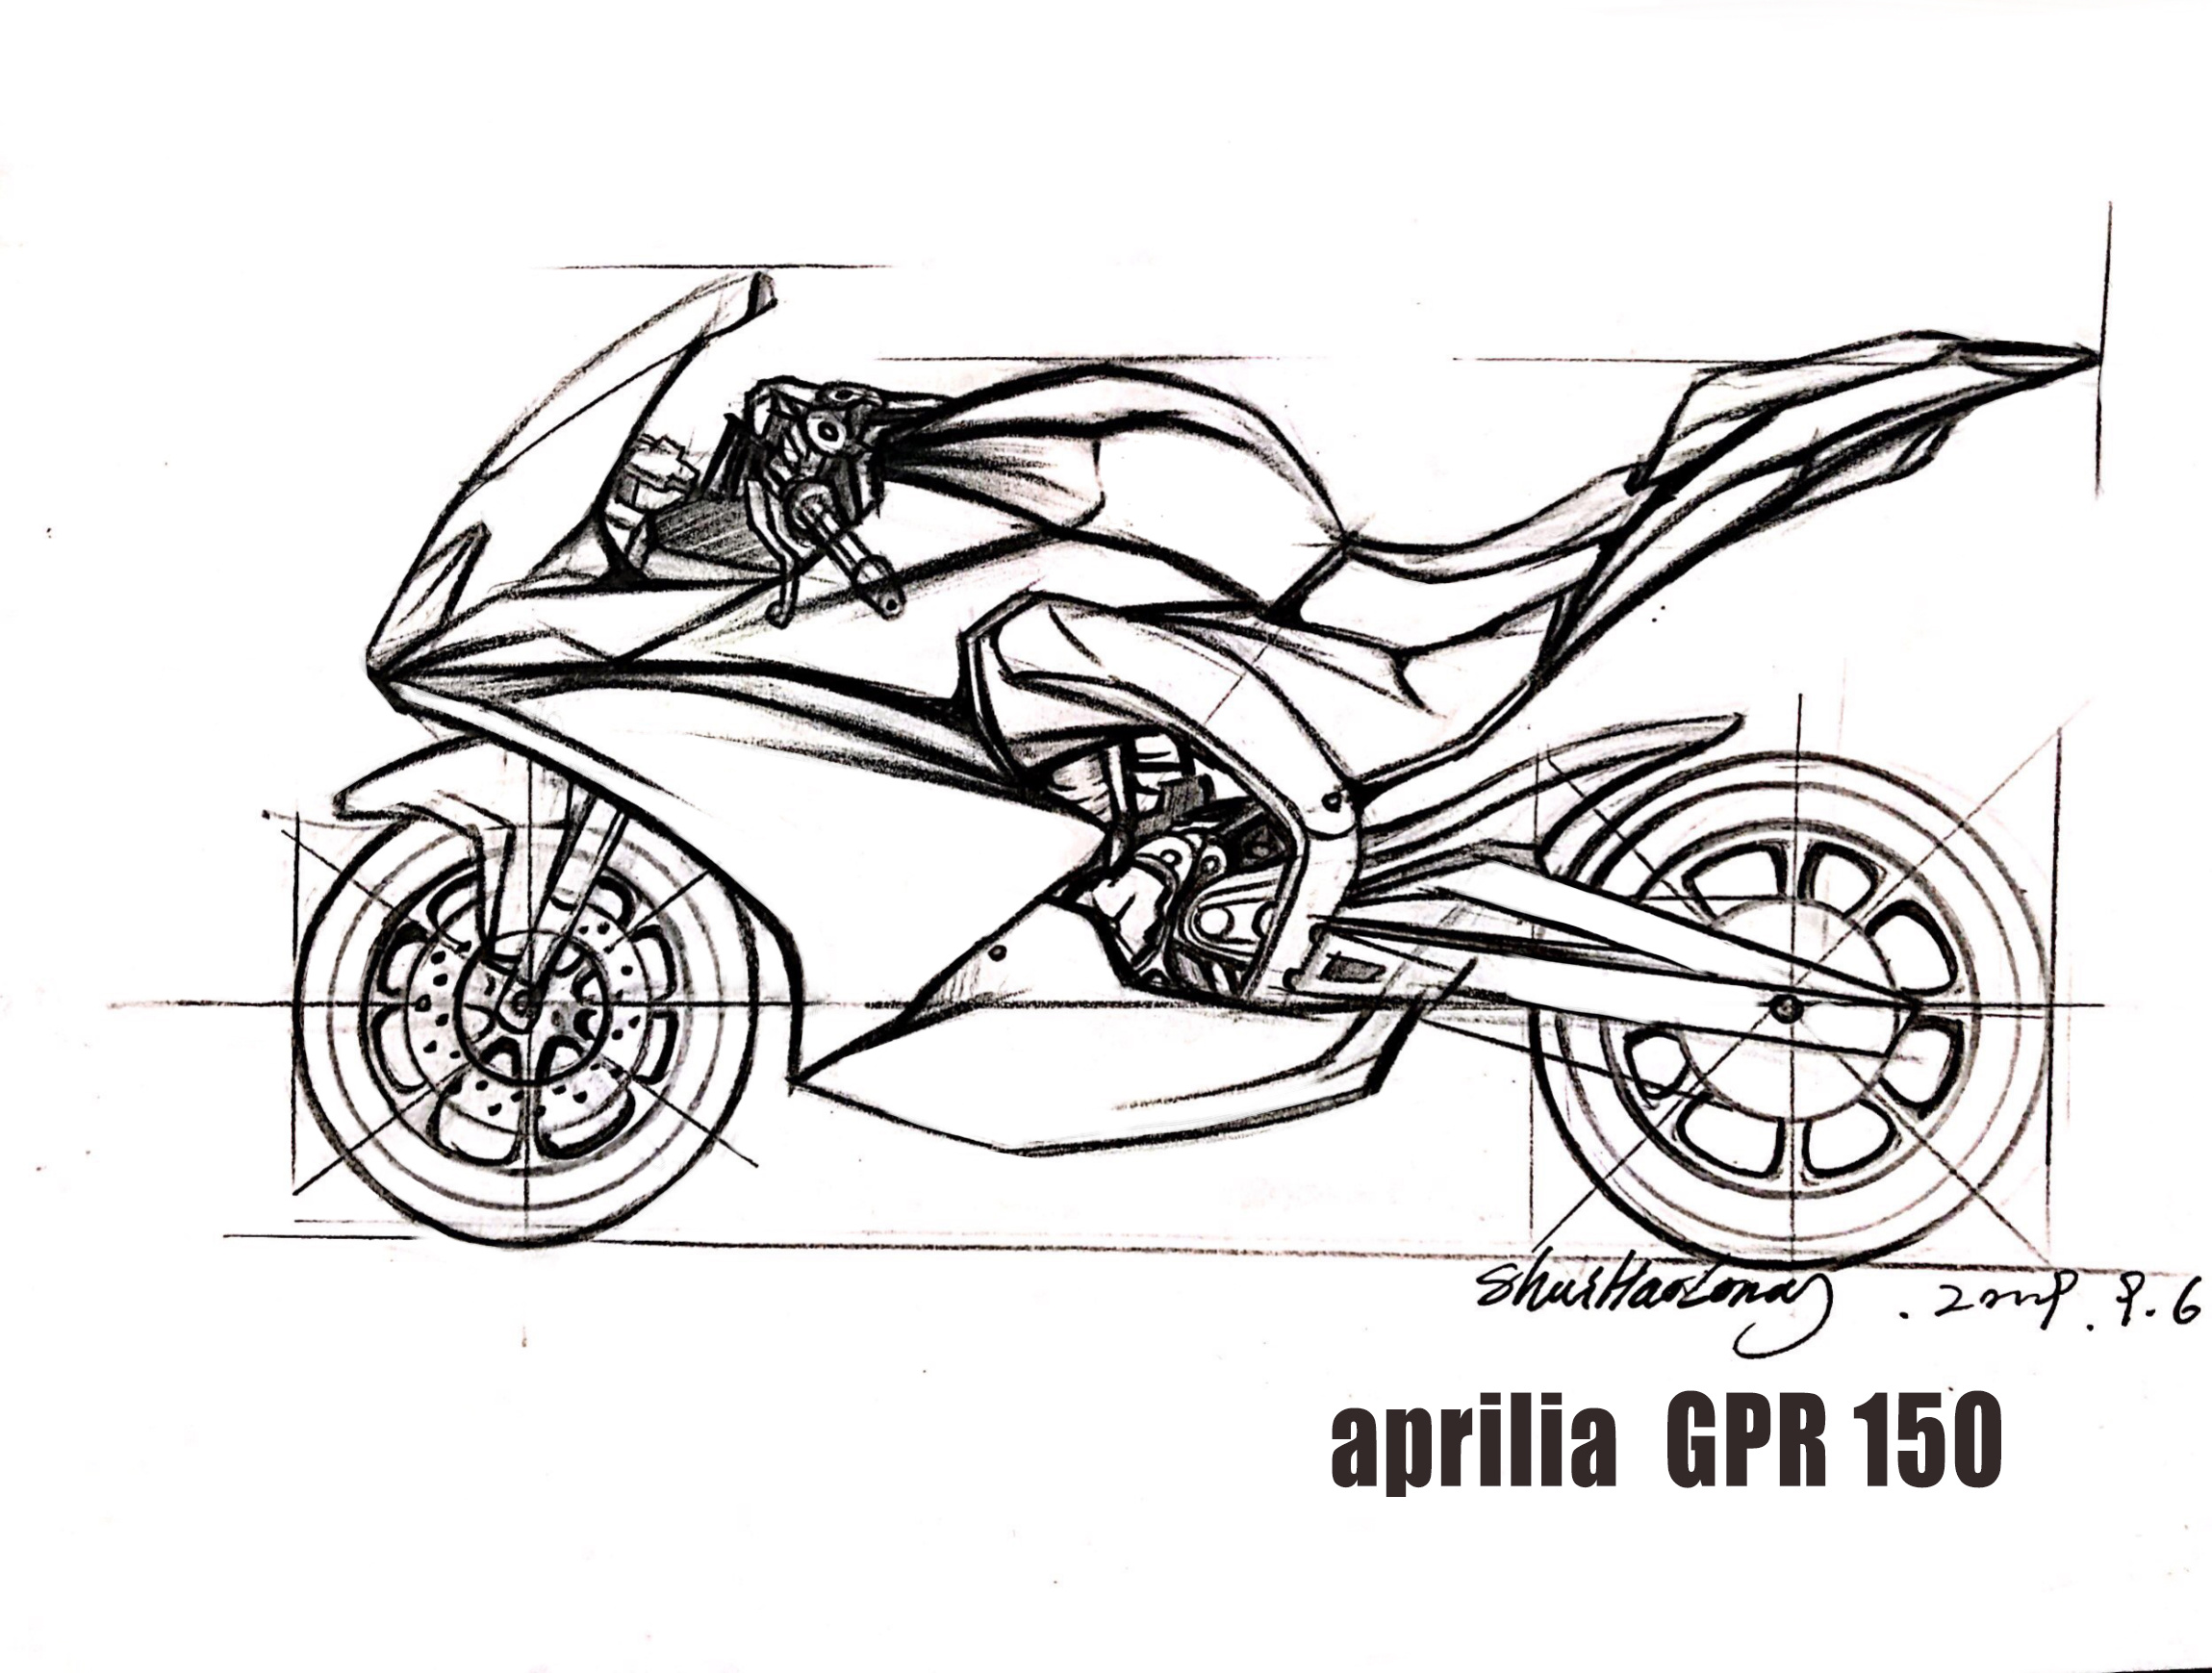 自制摩托车 设计图图片